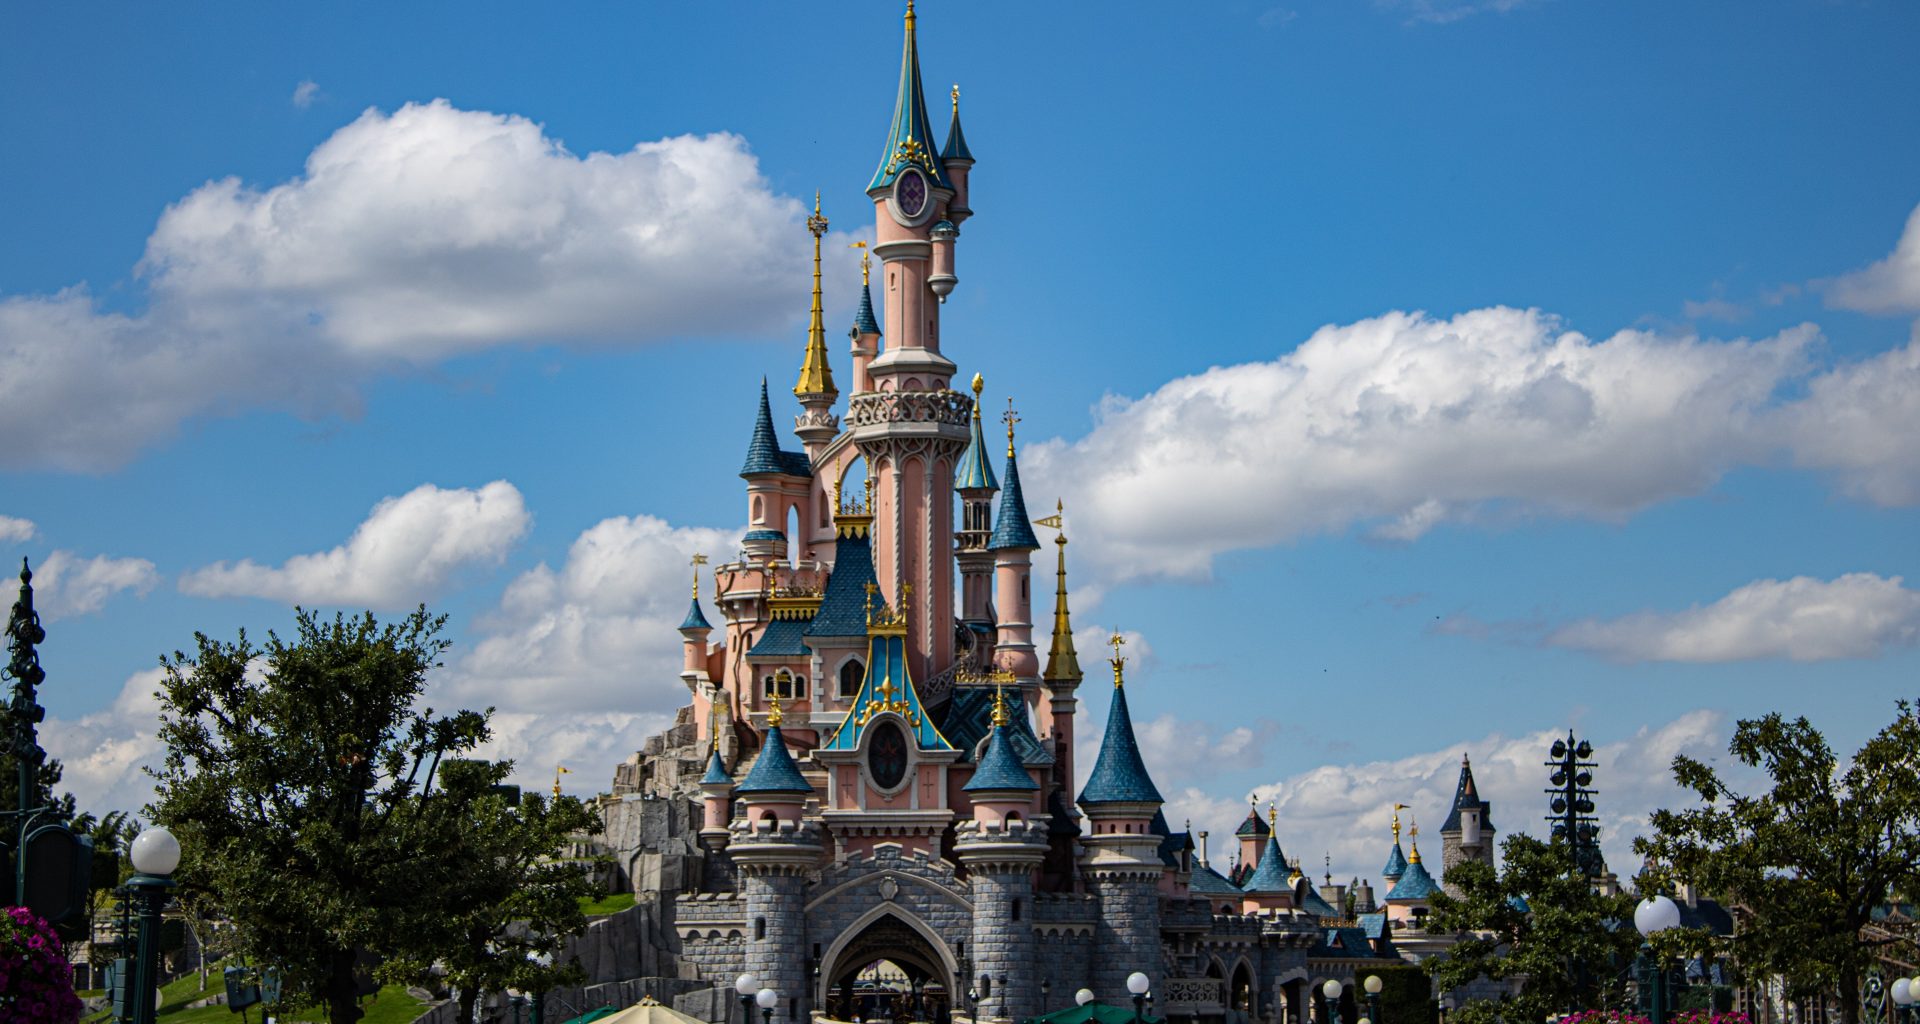 Visiter Disneyland Paris en 1 jour Meilleur moment, conseils, bon plan